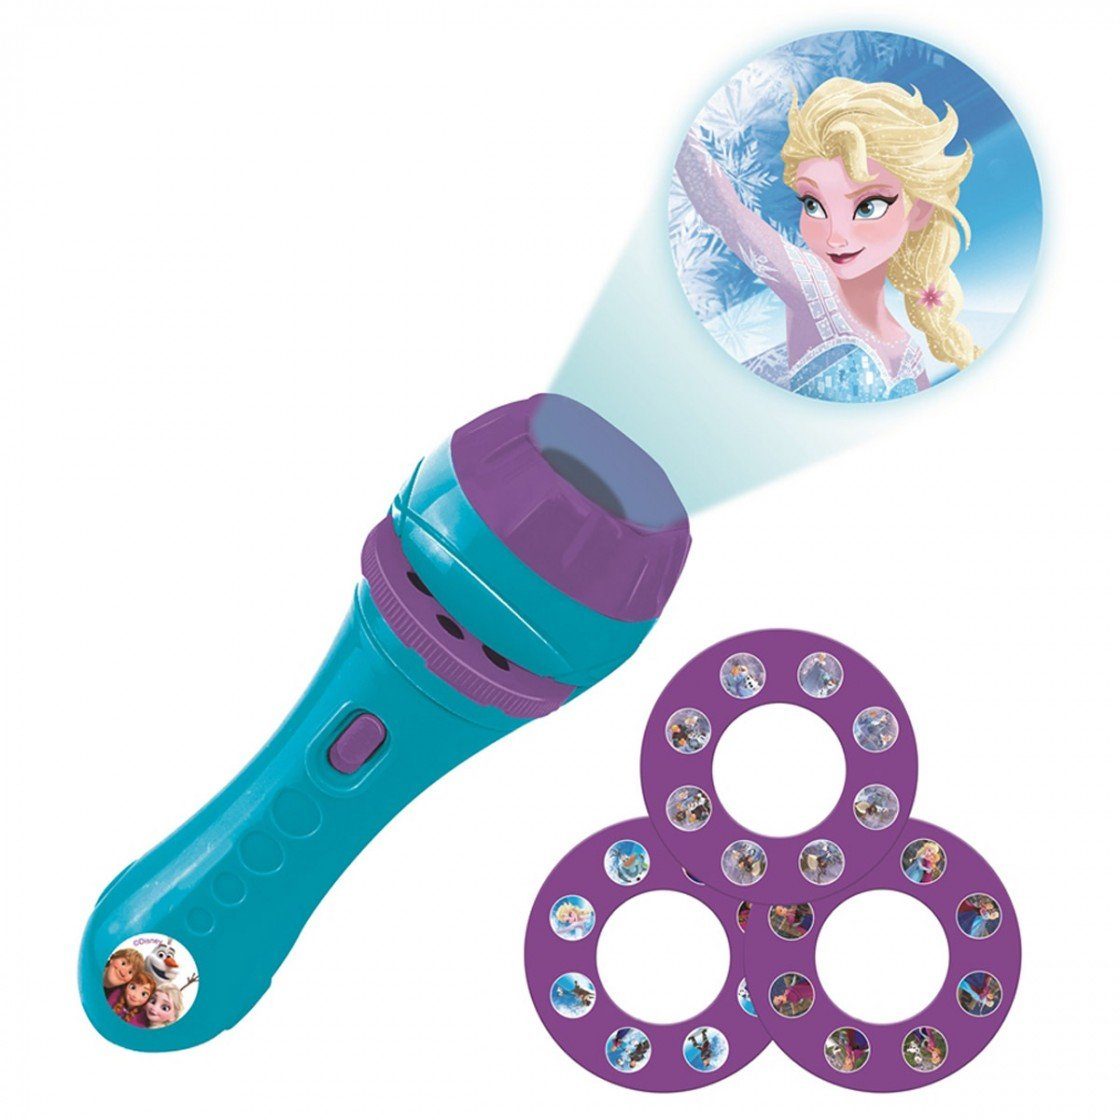 Lexibook® Taschenlampe Disney Anna Die Eiskönigin Projektor Taschenlampe Elsa Story und